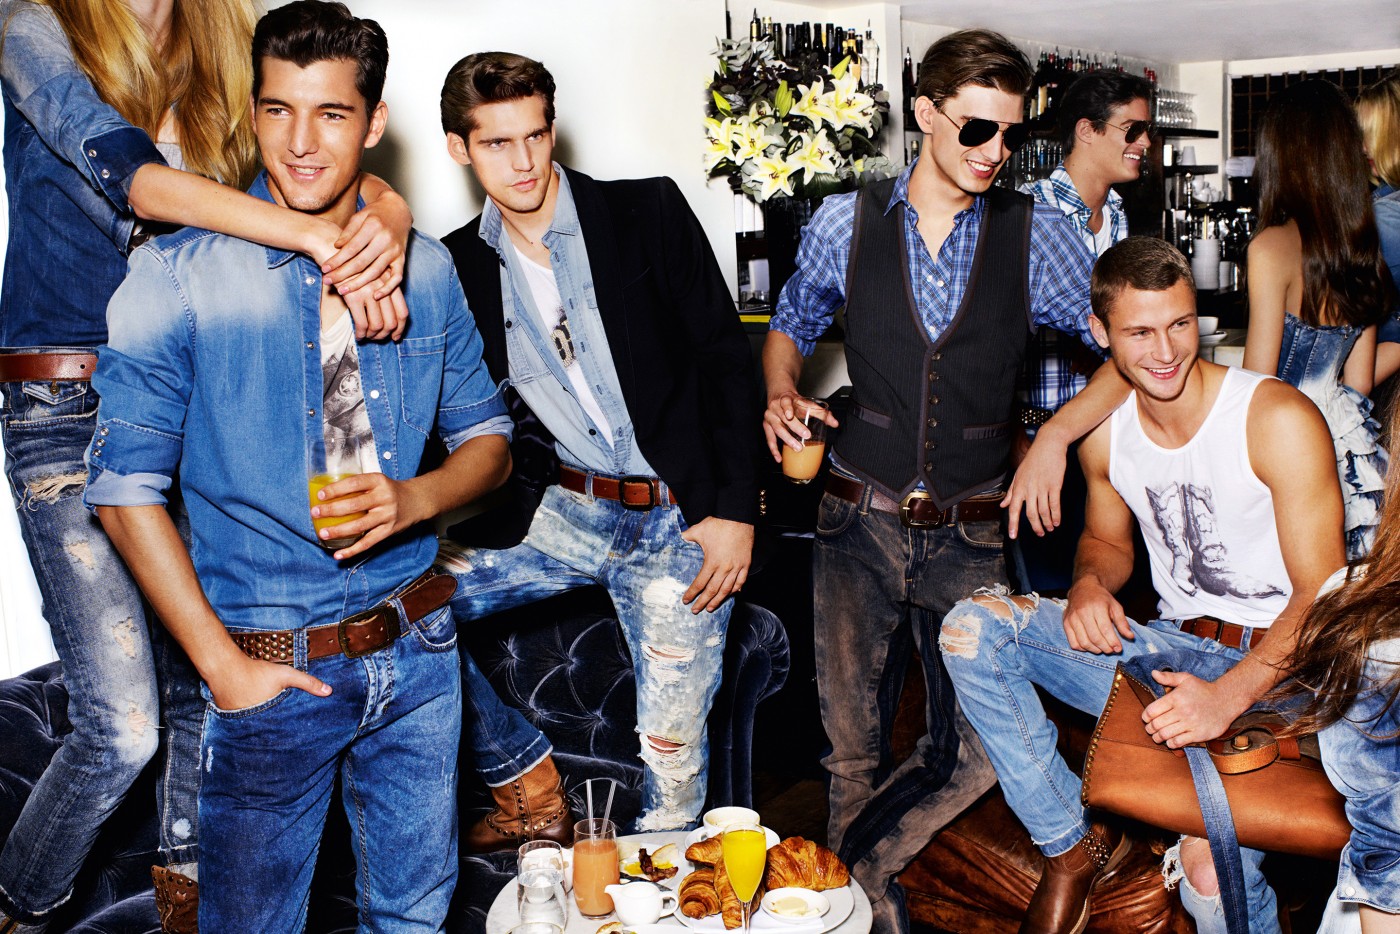 18 много мальчиков. Одежда для вечеринки мужская. Мужская вечеринка. Несколько парней. Реклама Дольче Габбана мужская одежда.